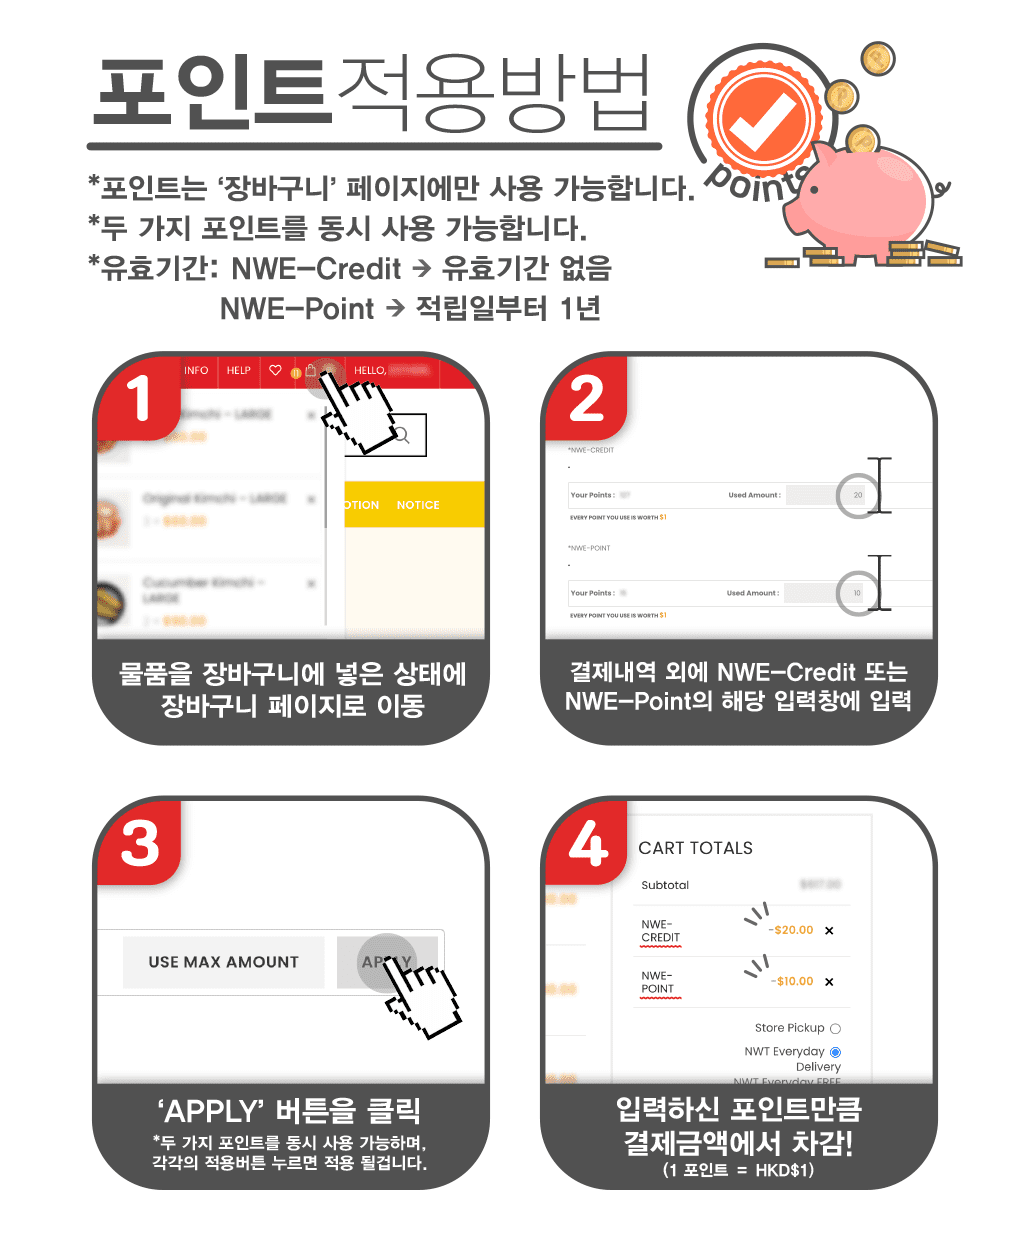 韓國食品-신세계마트 E-Shop 회원포인트 시스템 안내